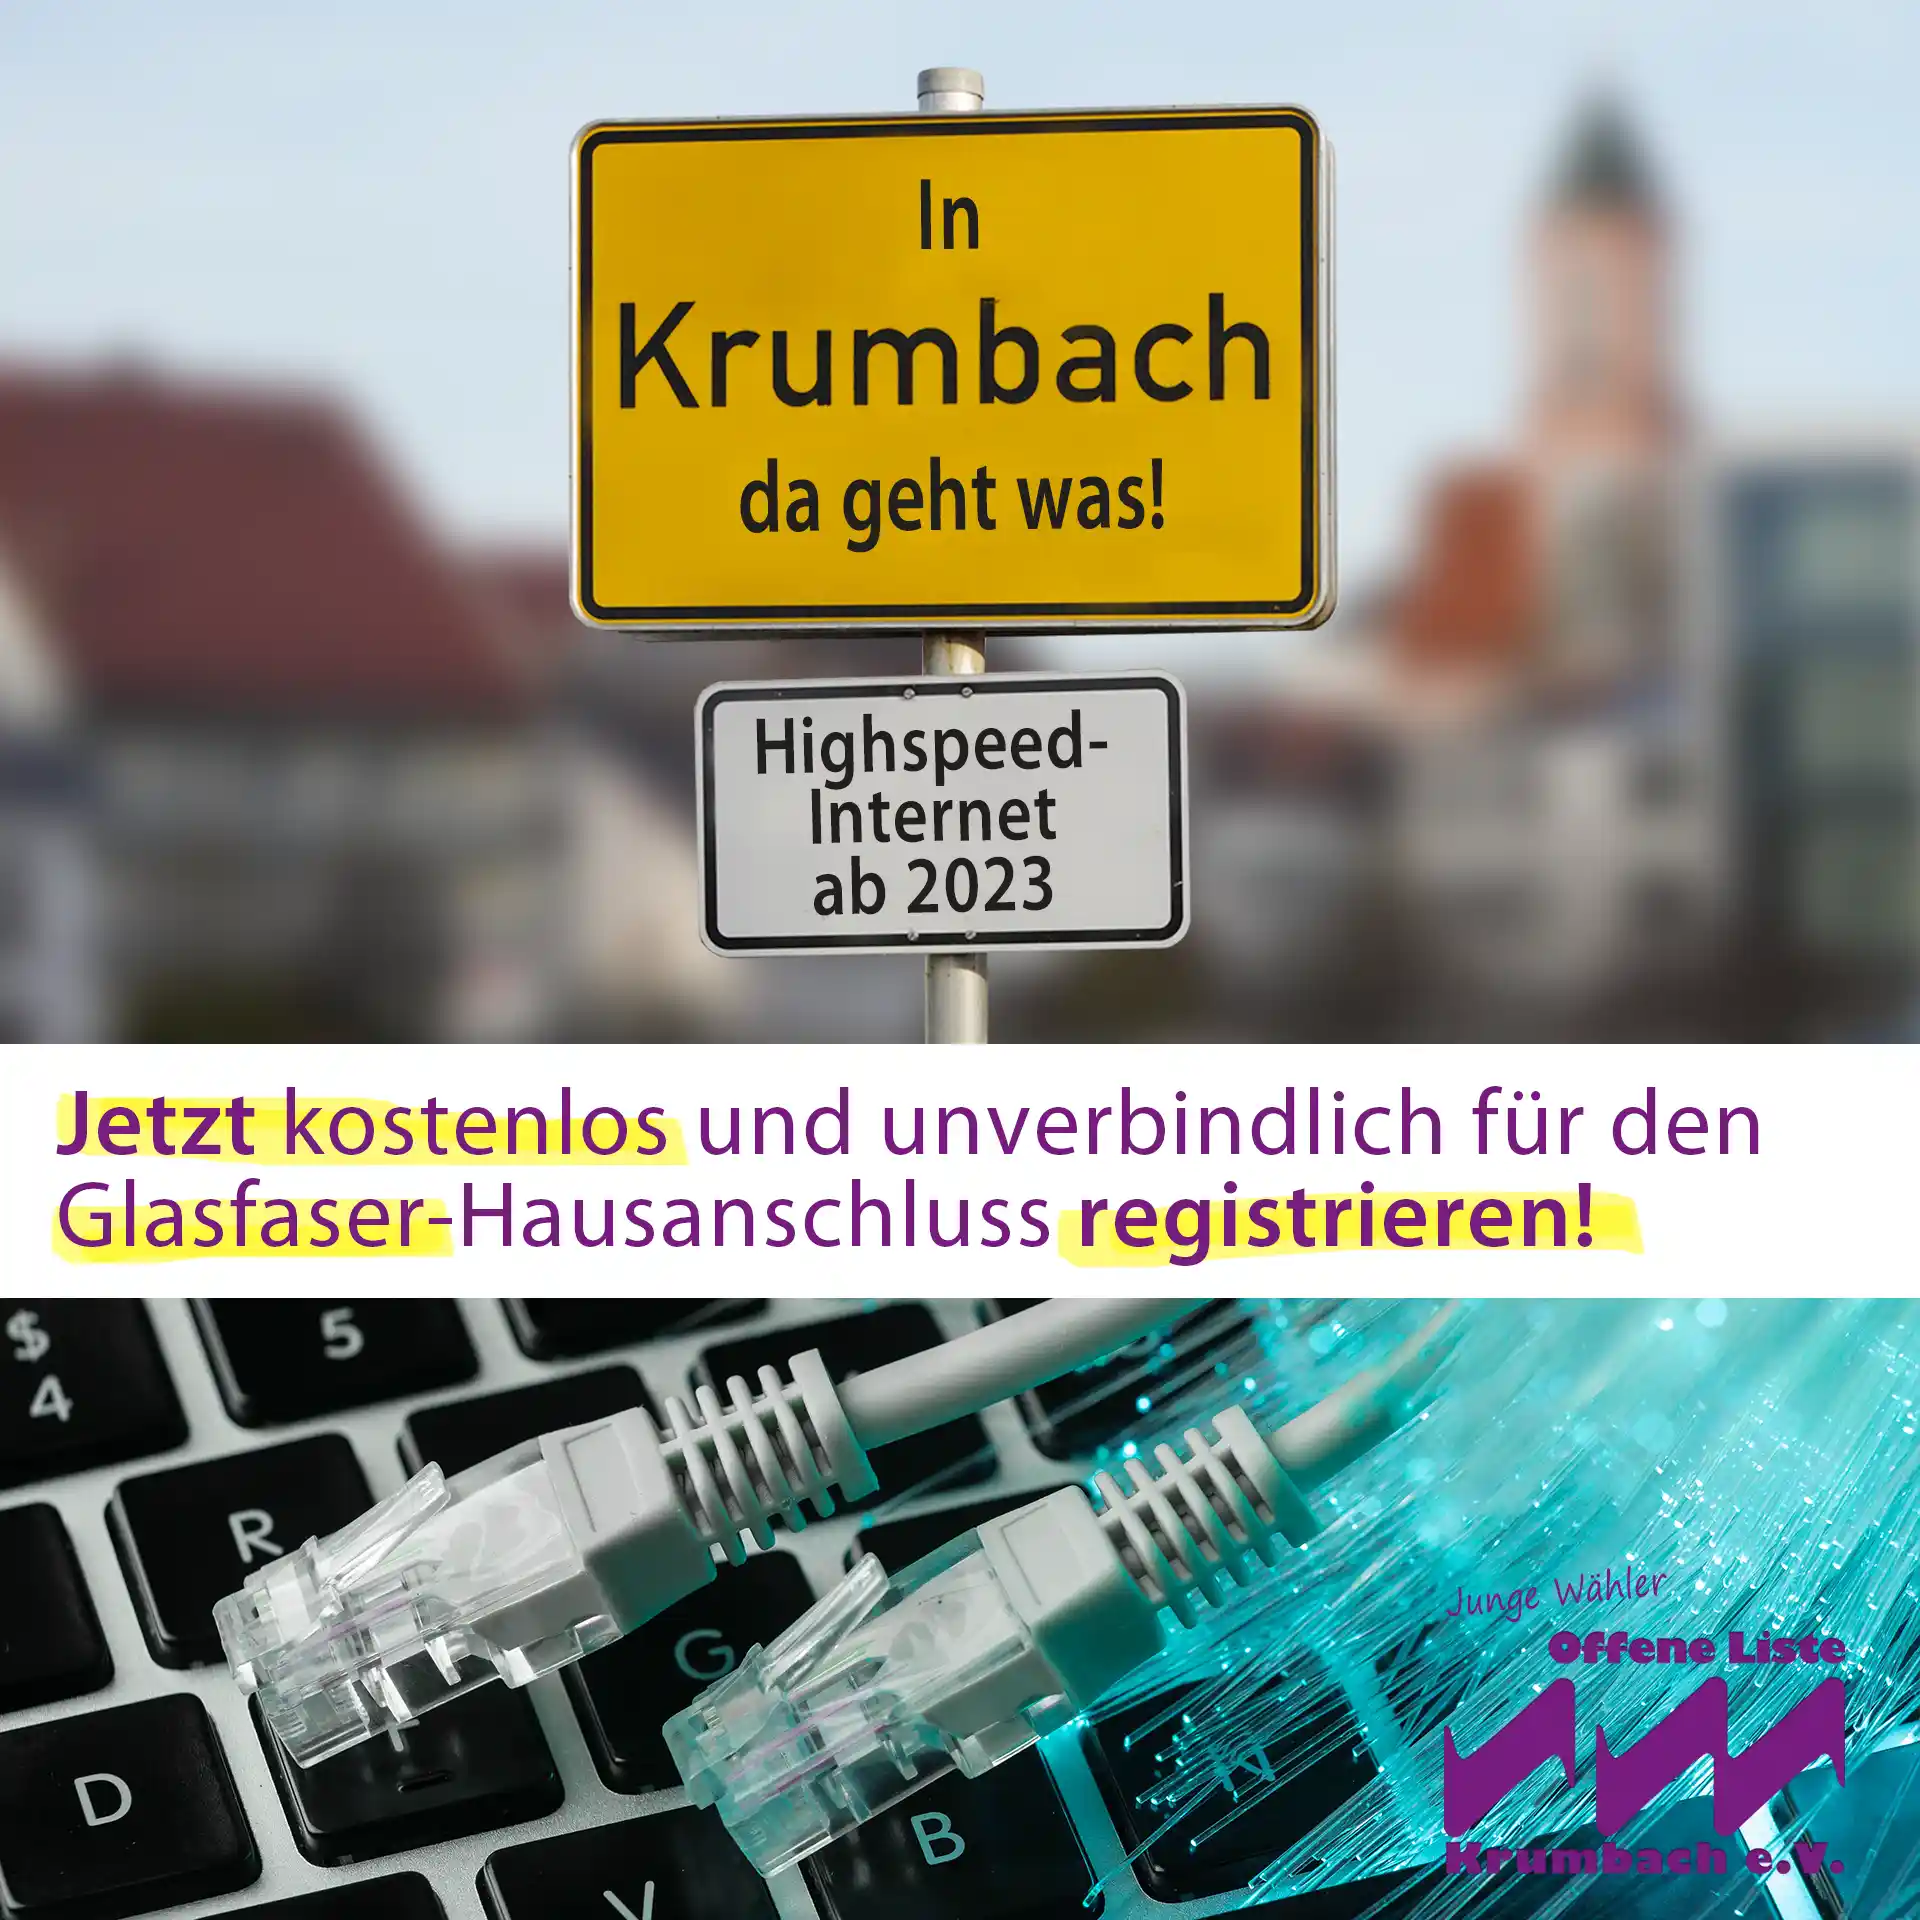 Schnelles Internet kommt endlich nach Krumbach. Telekom plant GLASFASERAUSBAU in 2023 und 2024